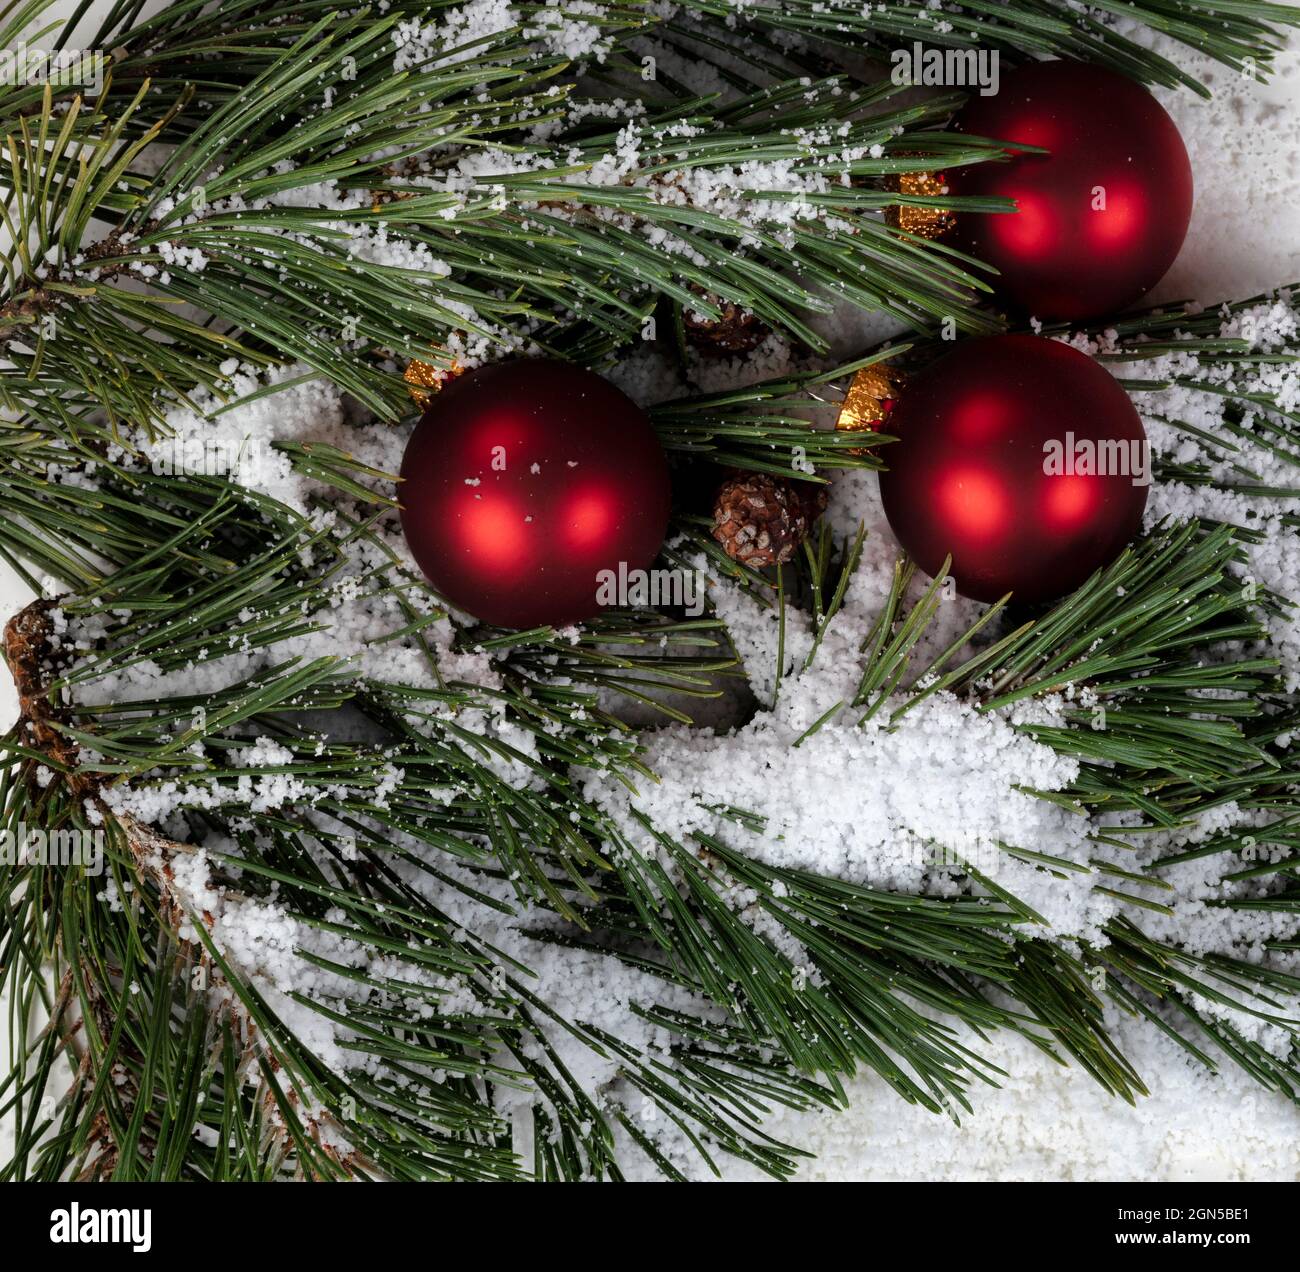 Cadre rempli de branches de sapin couvertes de neige véritable et d'ornements de boules rouges pour un joyeux Noël ou un joyeux concept de fête du nouvel an Banque D'Images